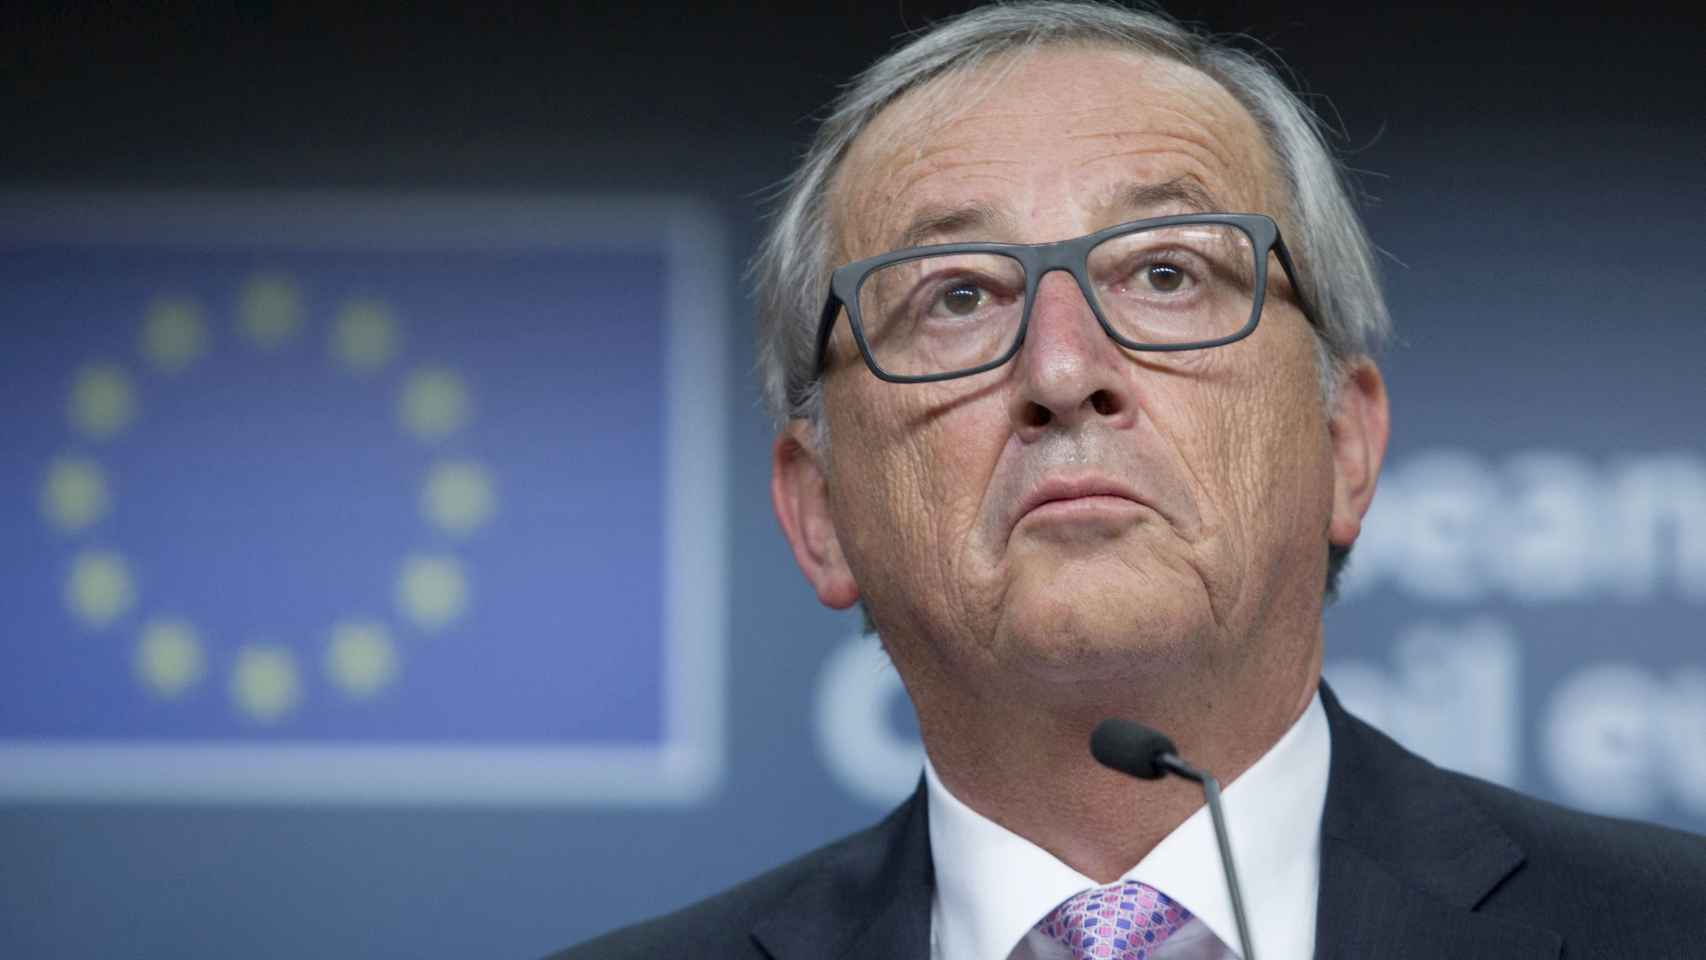 El presidente de la Comisión Europea, Jean Claude Juncker, tras la reunión de líderes europeos. / REUTERS